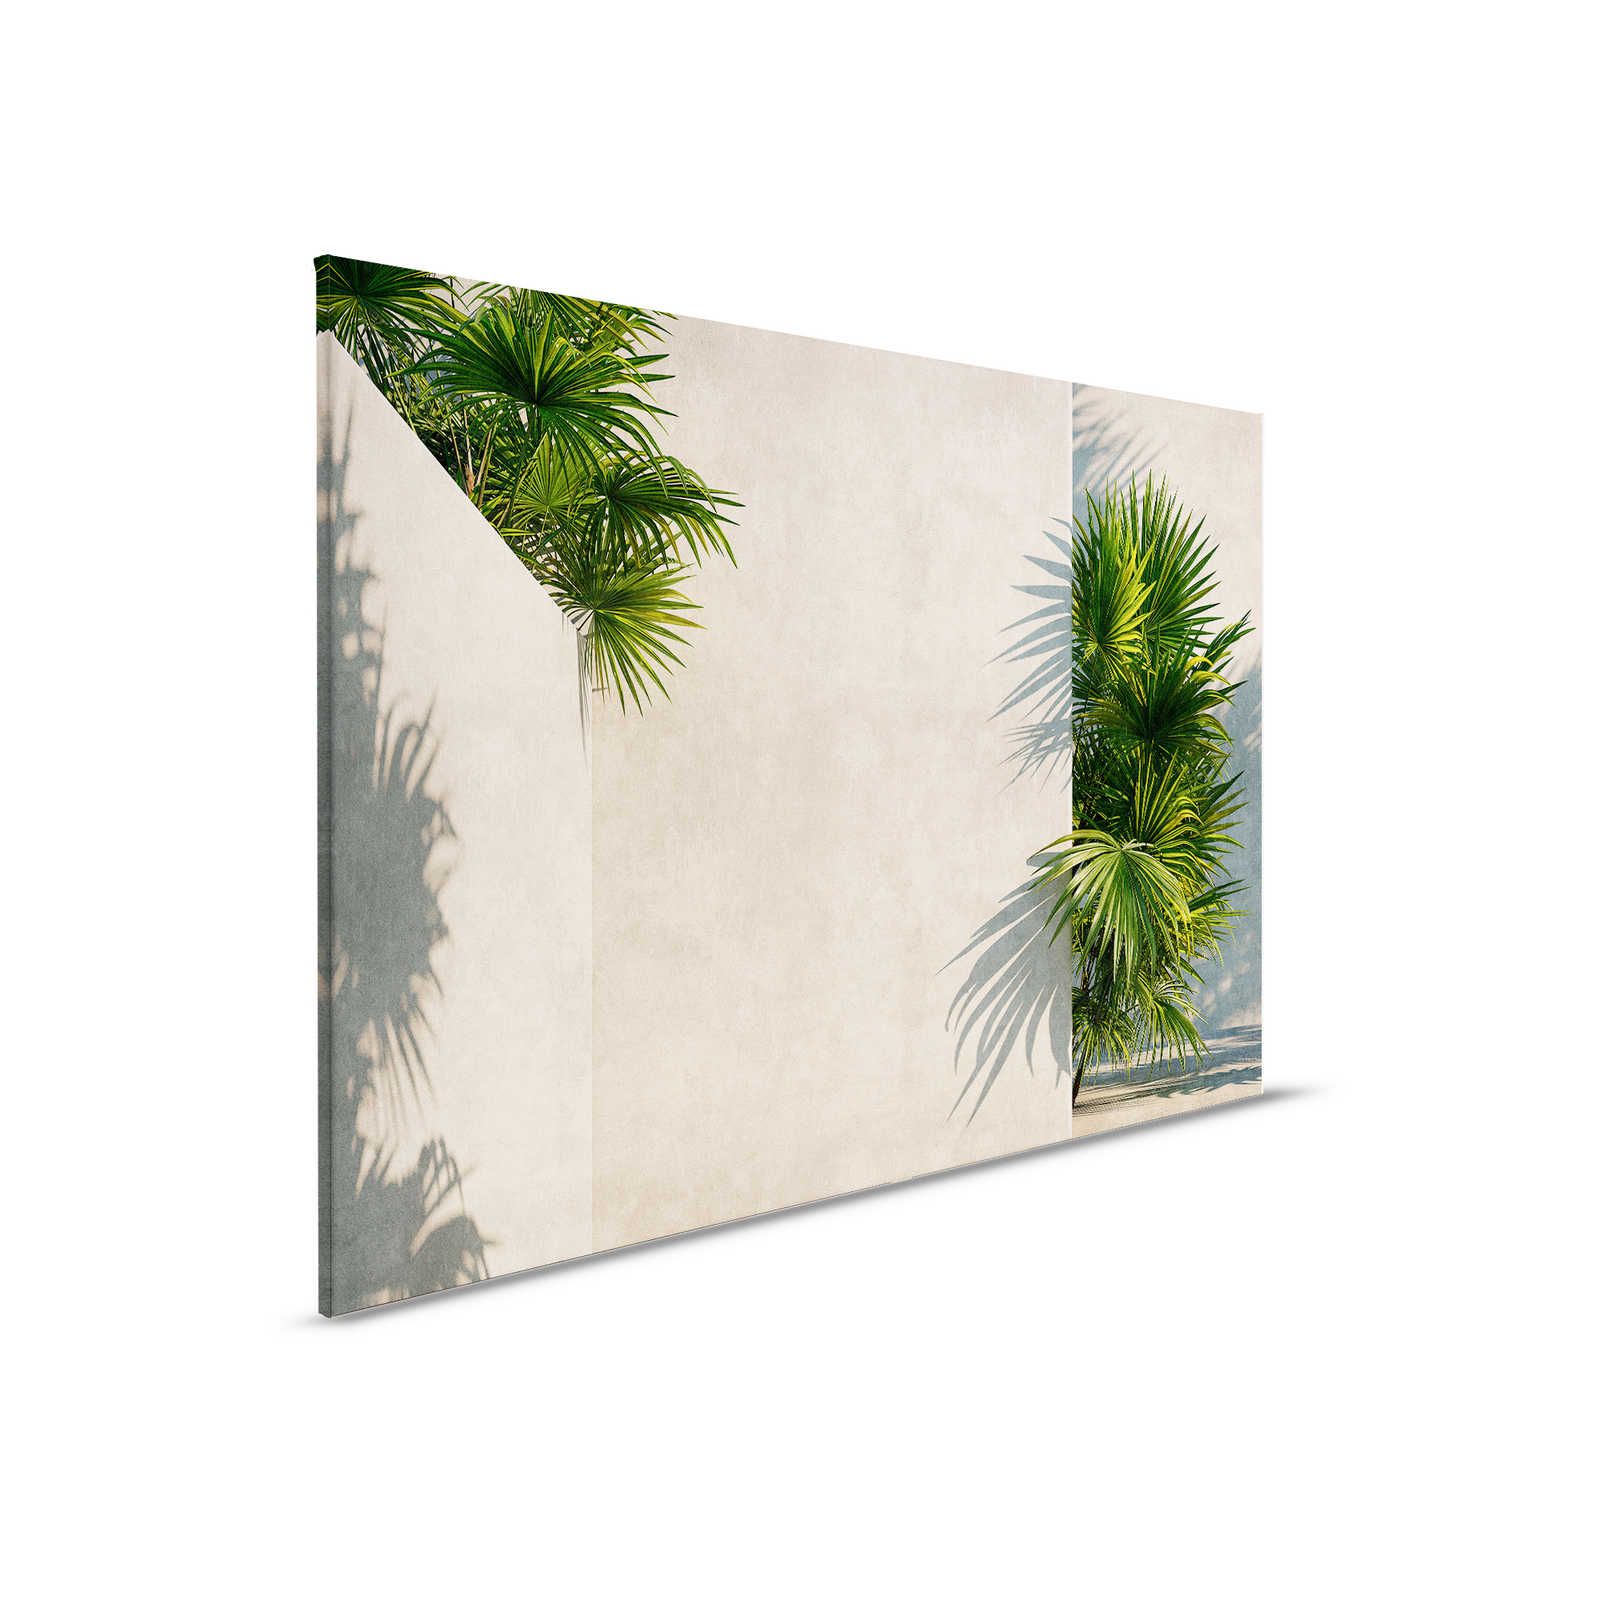         Tunis 1 - Leinwandbild Palmen im Innenhof mit Putz-Wänden – 0,90 m x 0,60 m
    